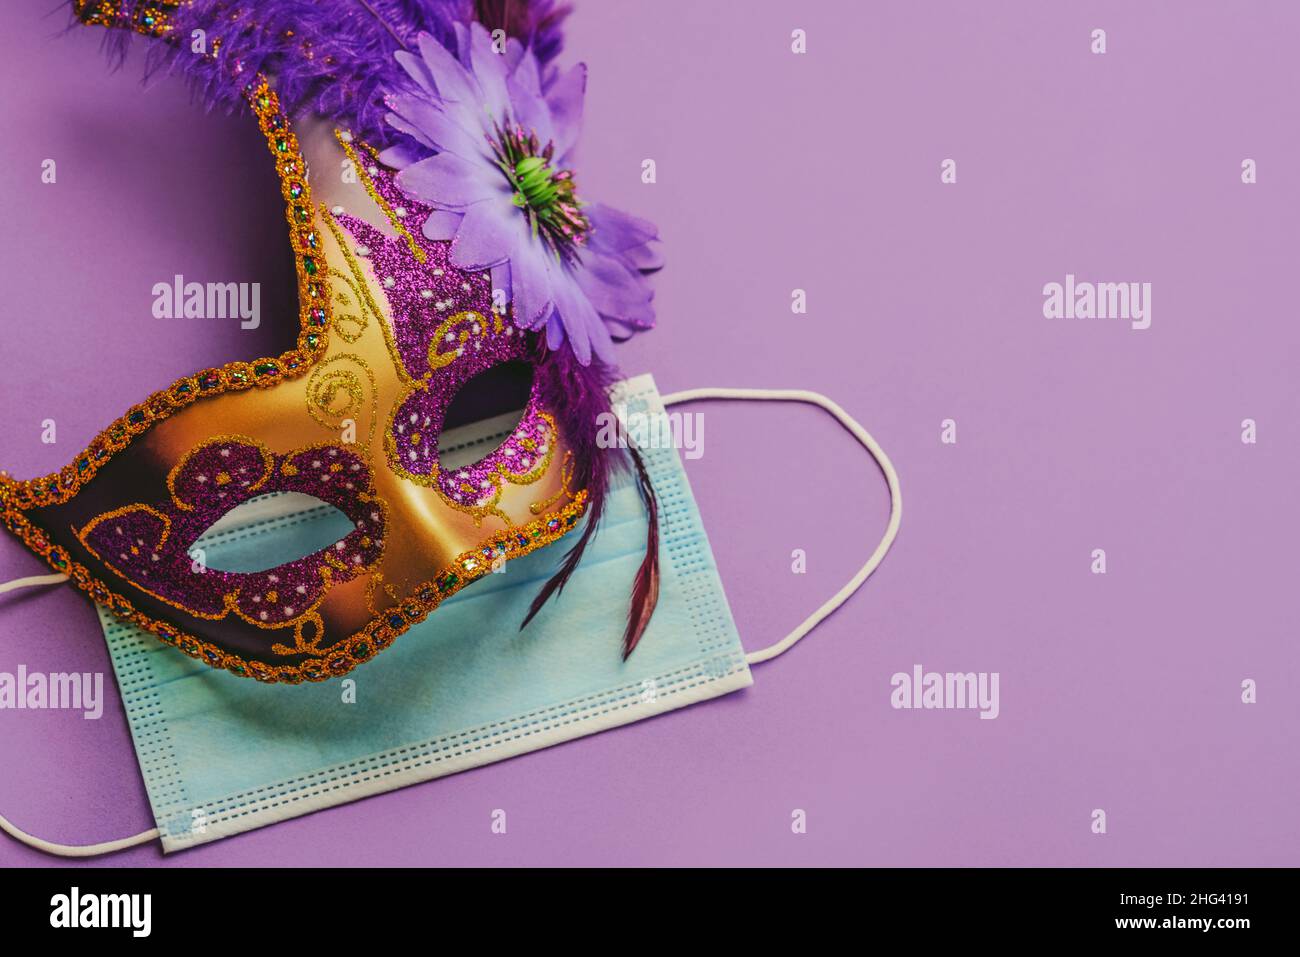 Konzept des Karnevals während des Covid-19. Venezianische Karnevalsmaske mit schützender OP-Maske auf violettem Hintergrund. Konzept der Karnevalsfeier Stockfoto